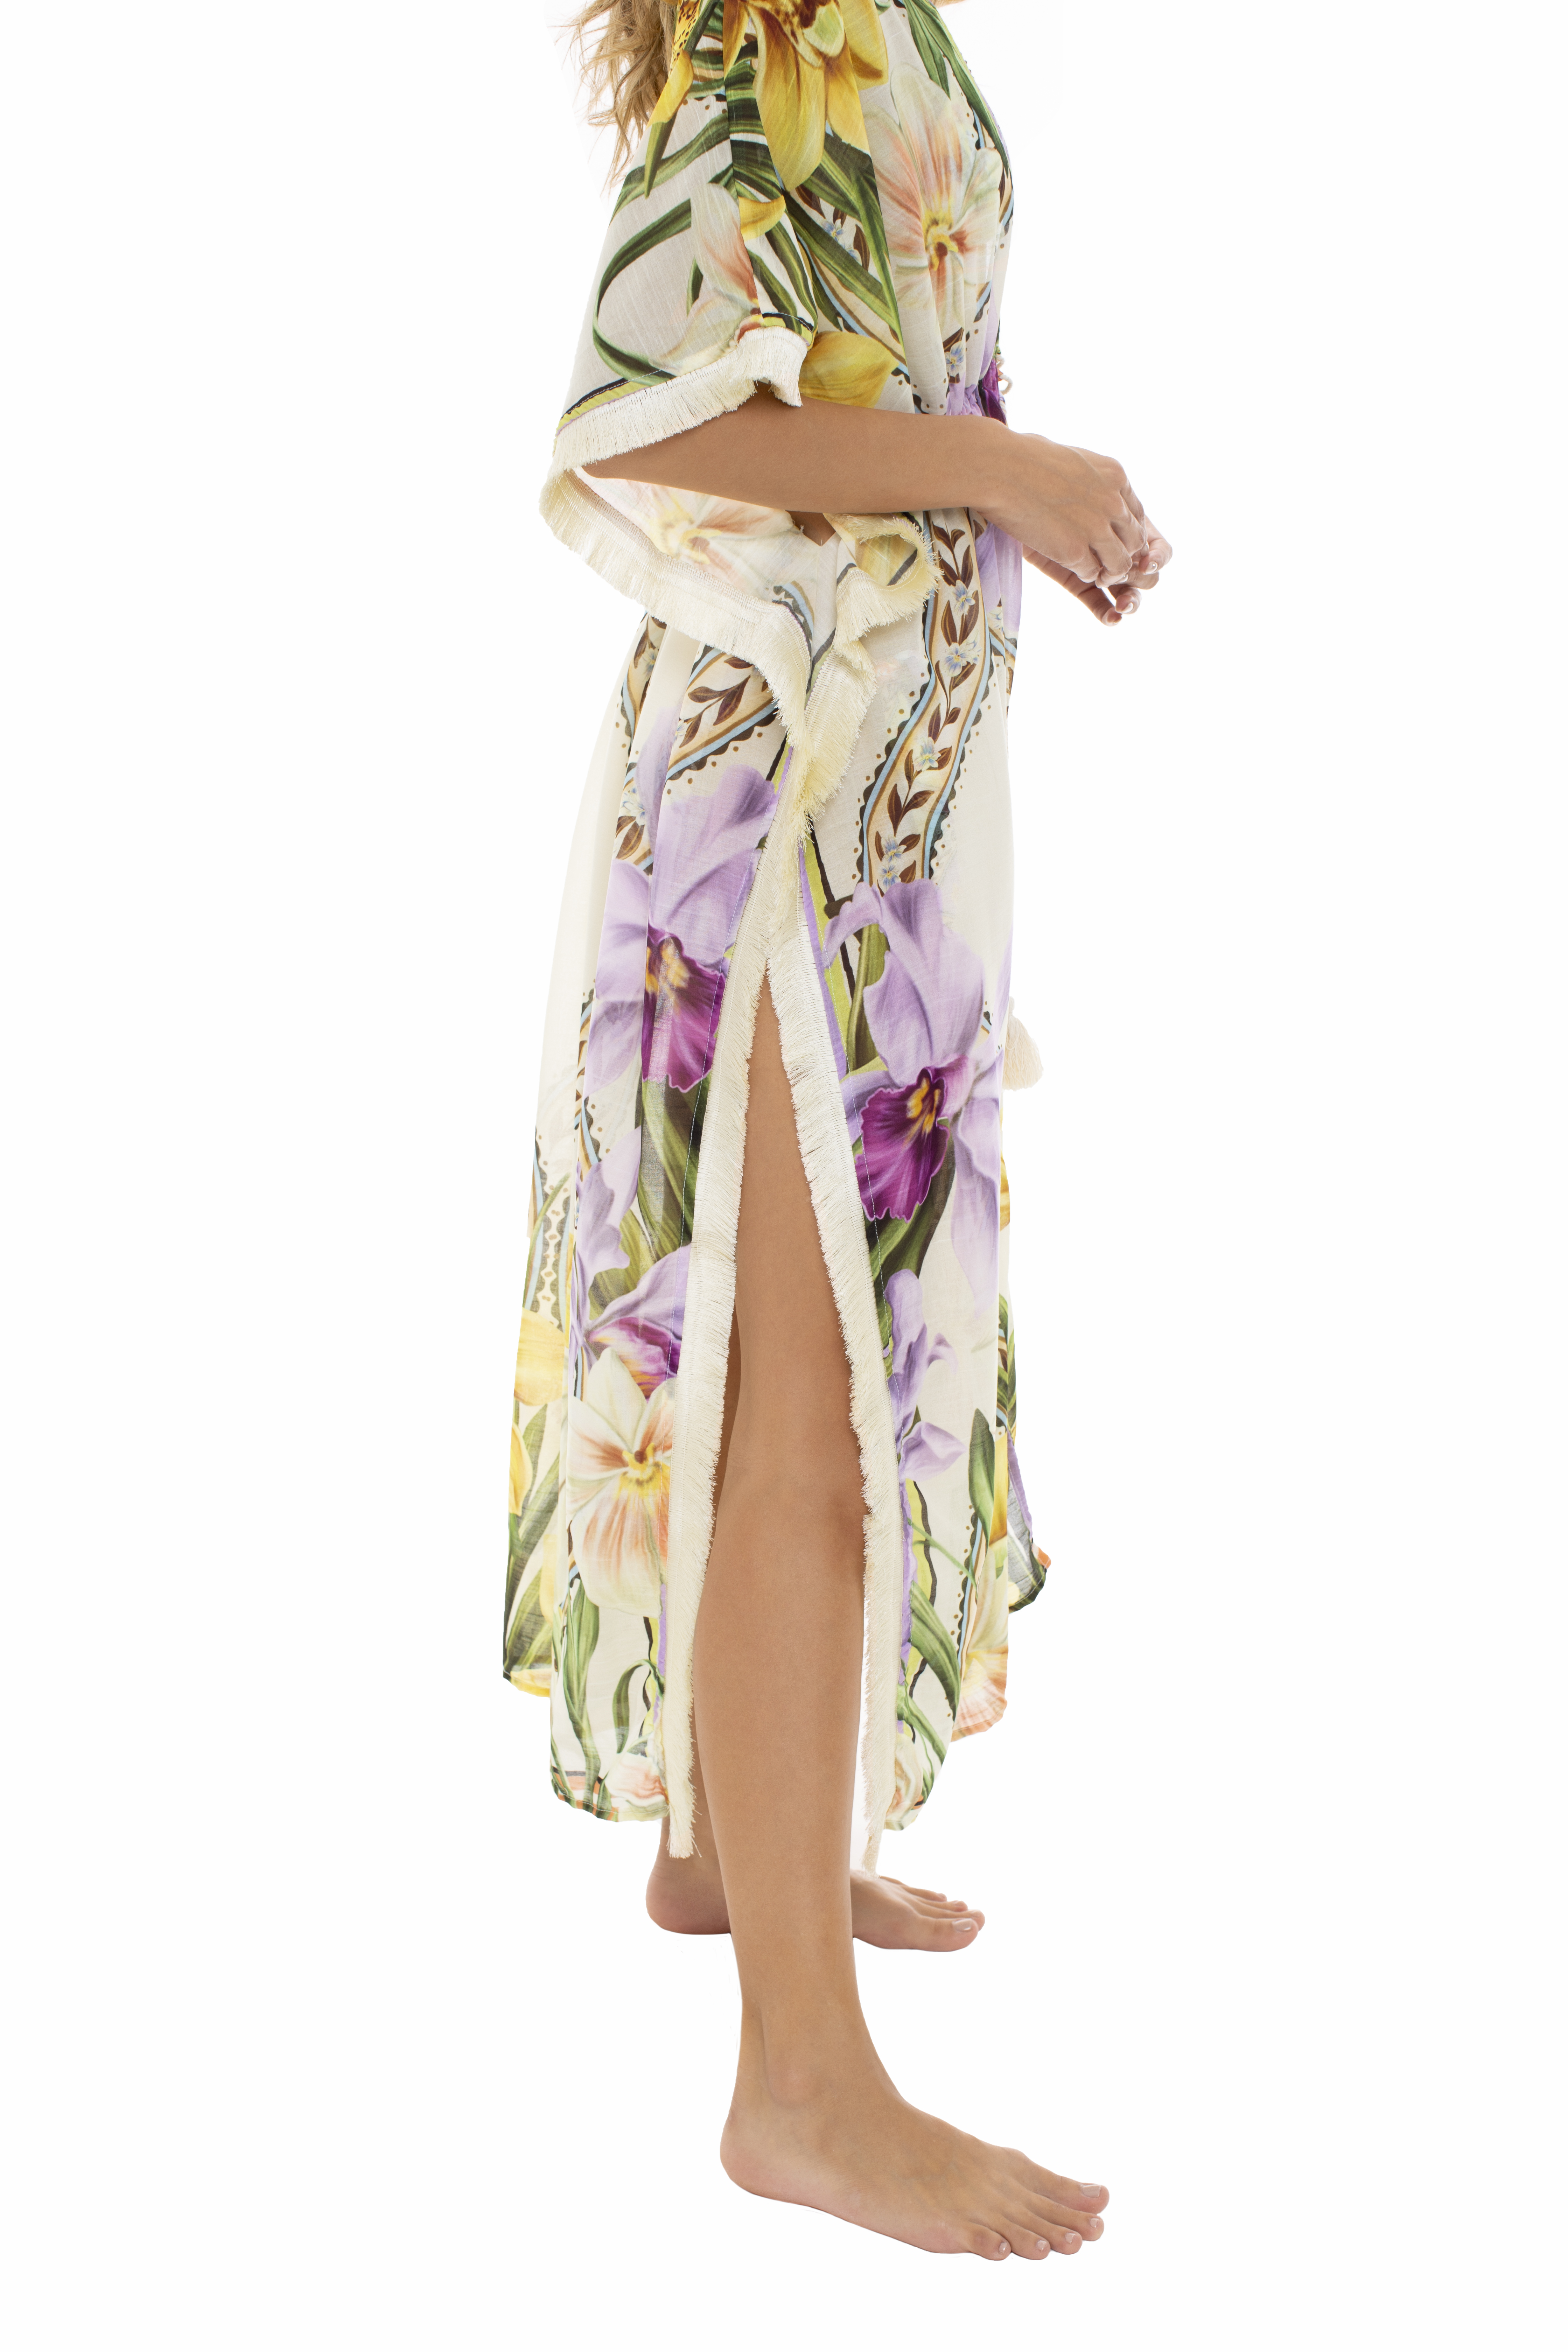 Milonga Atlas Kimono